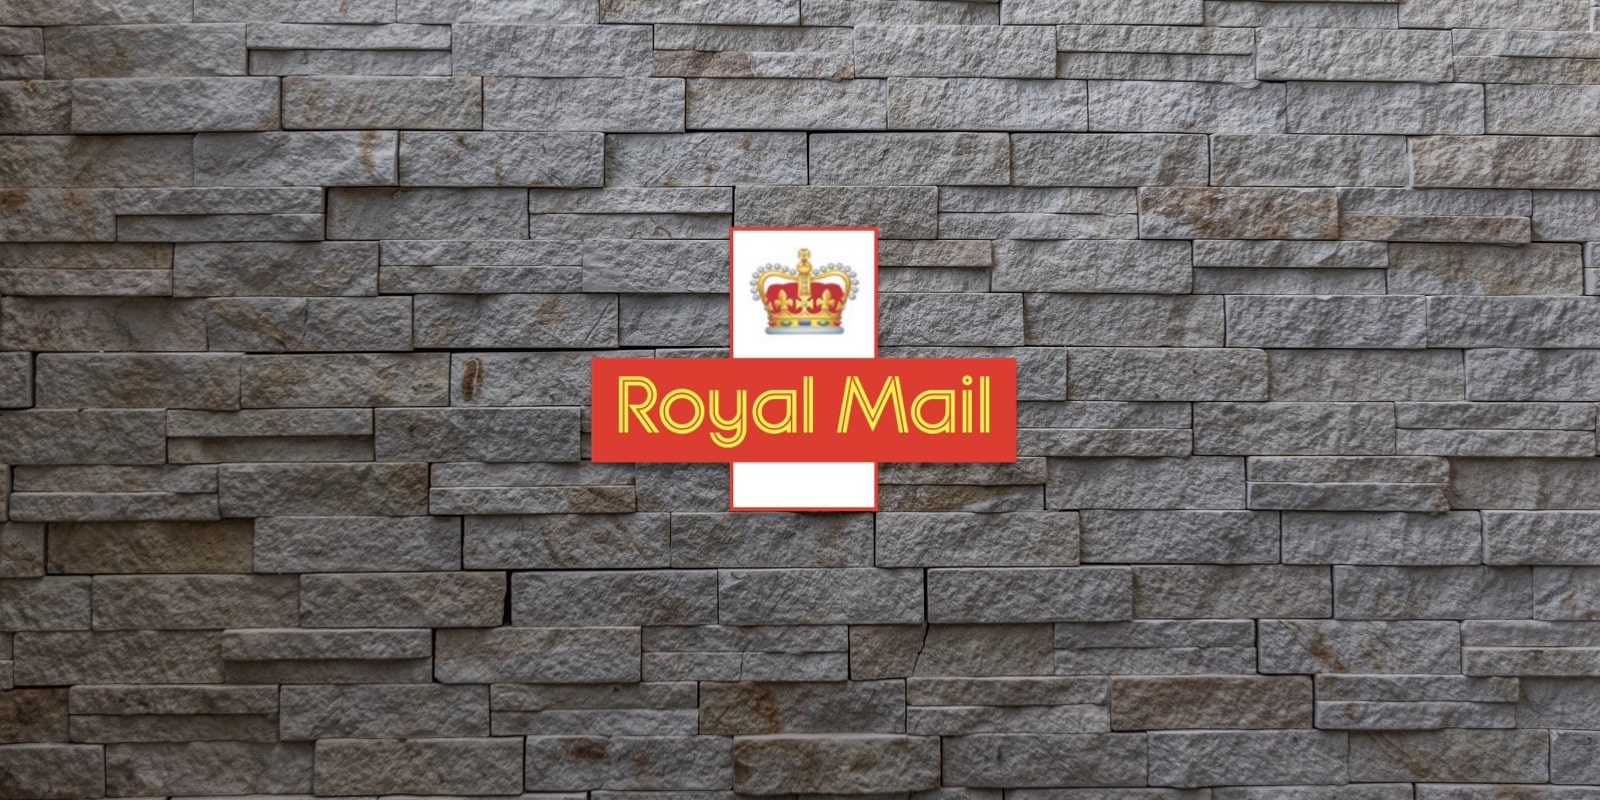 Royal Mail logo on brick wall